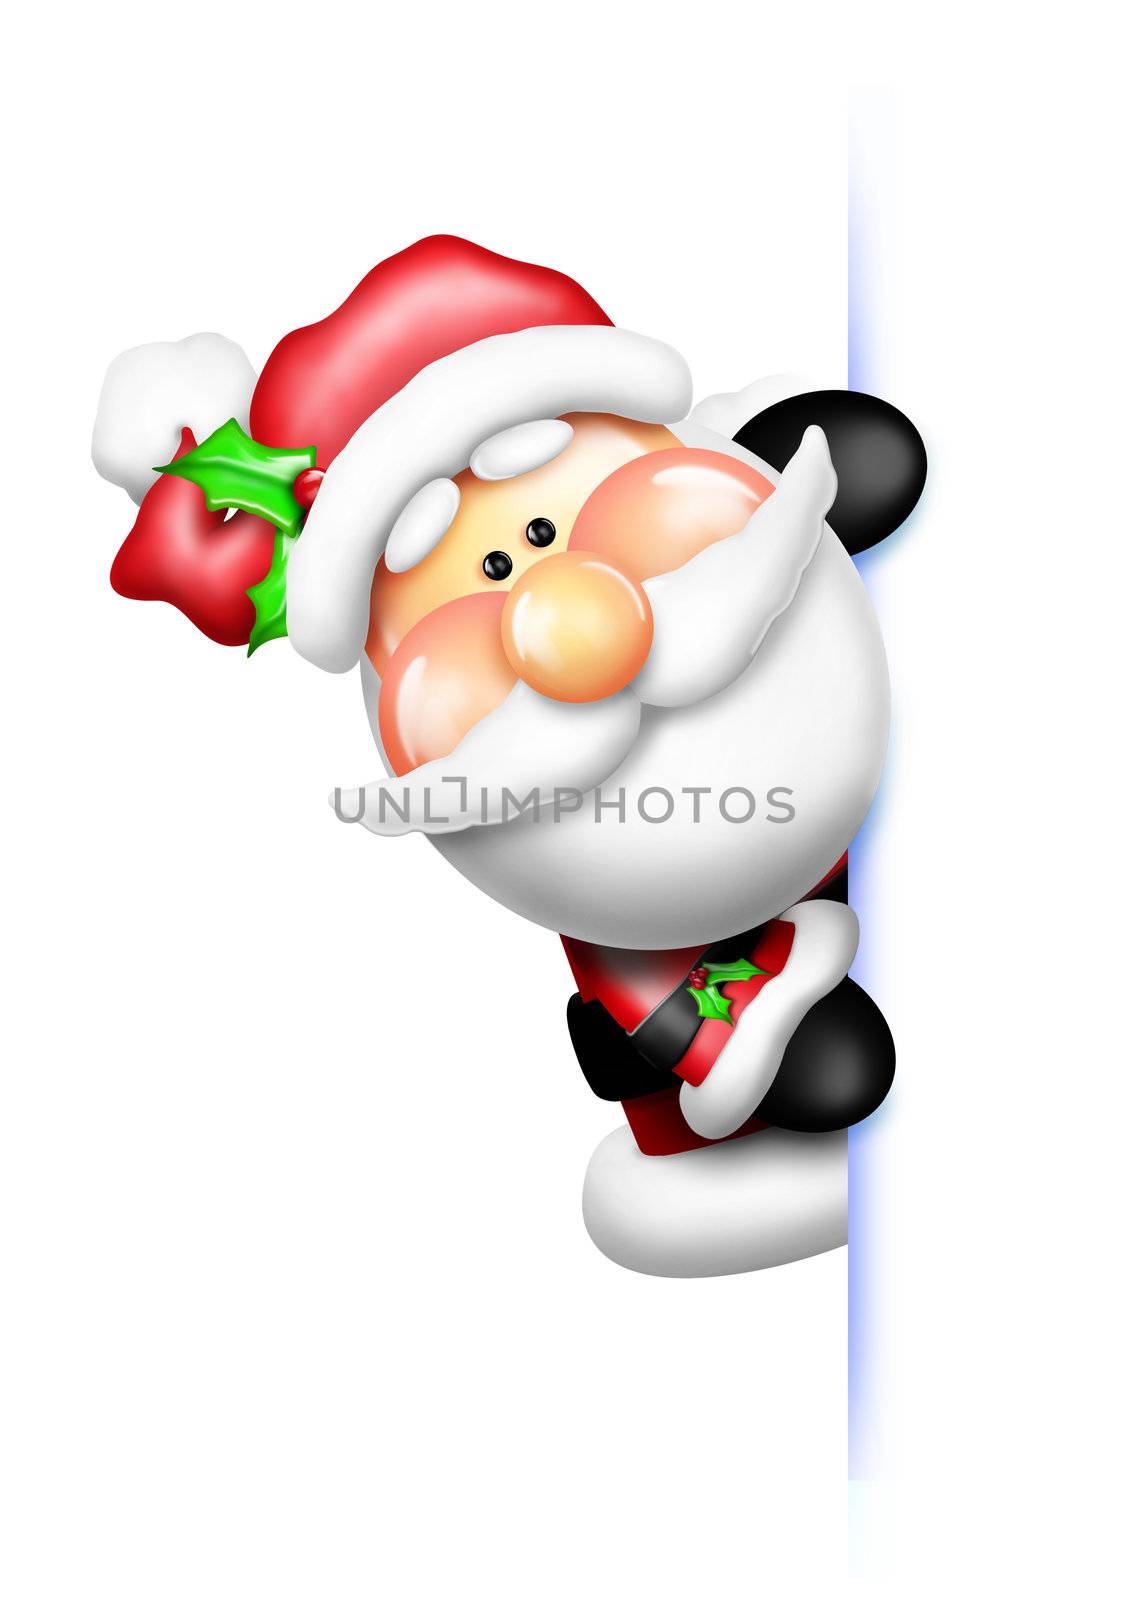 An adorable Santa peeking around a white frame.